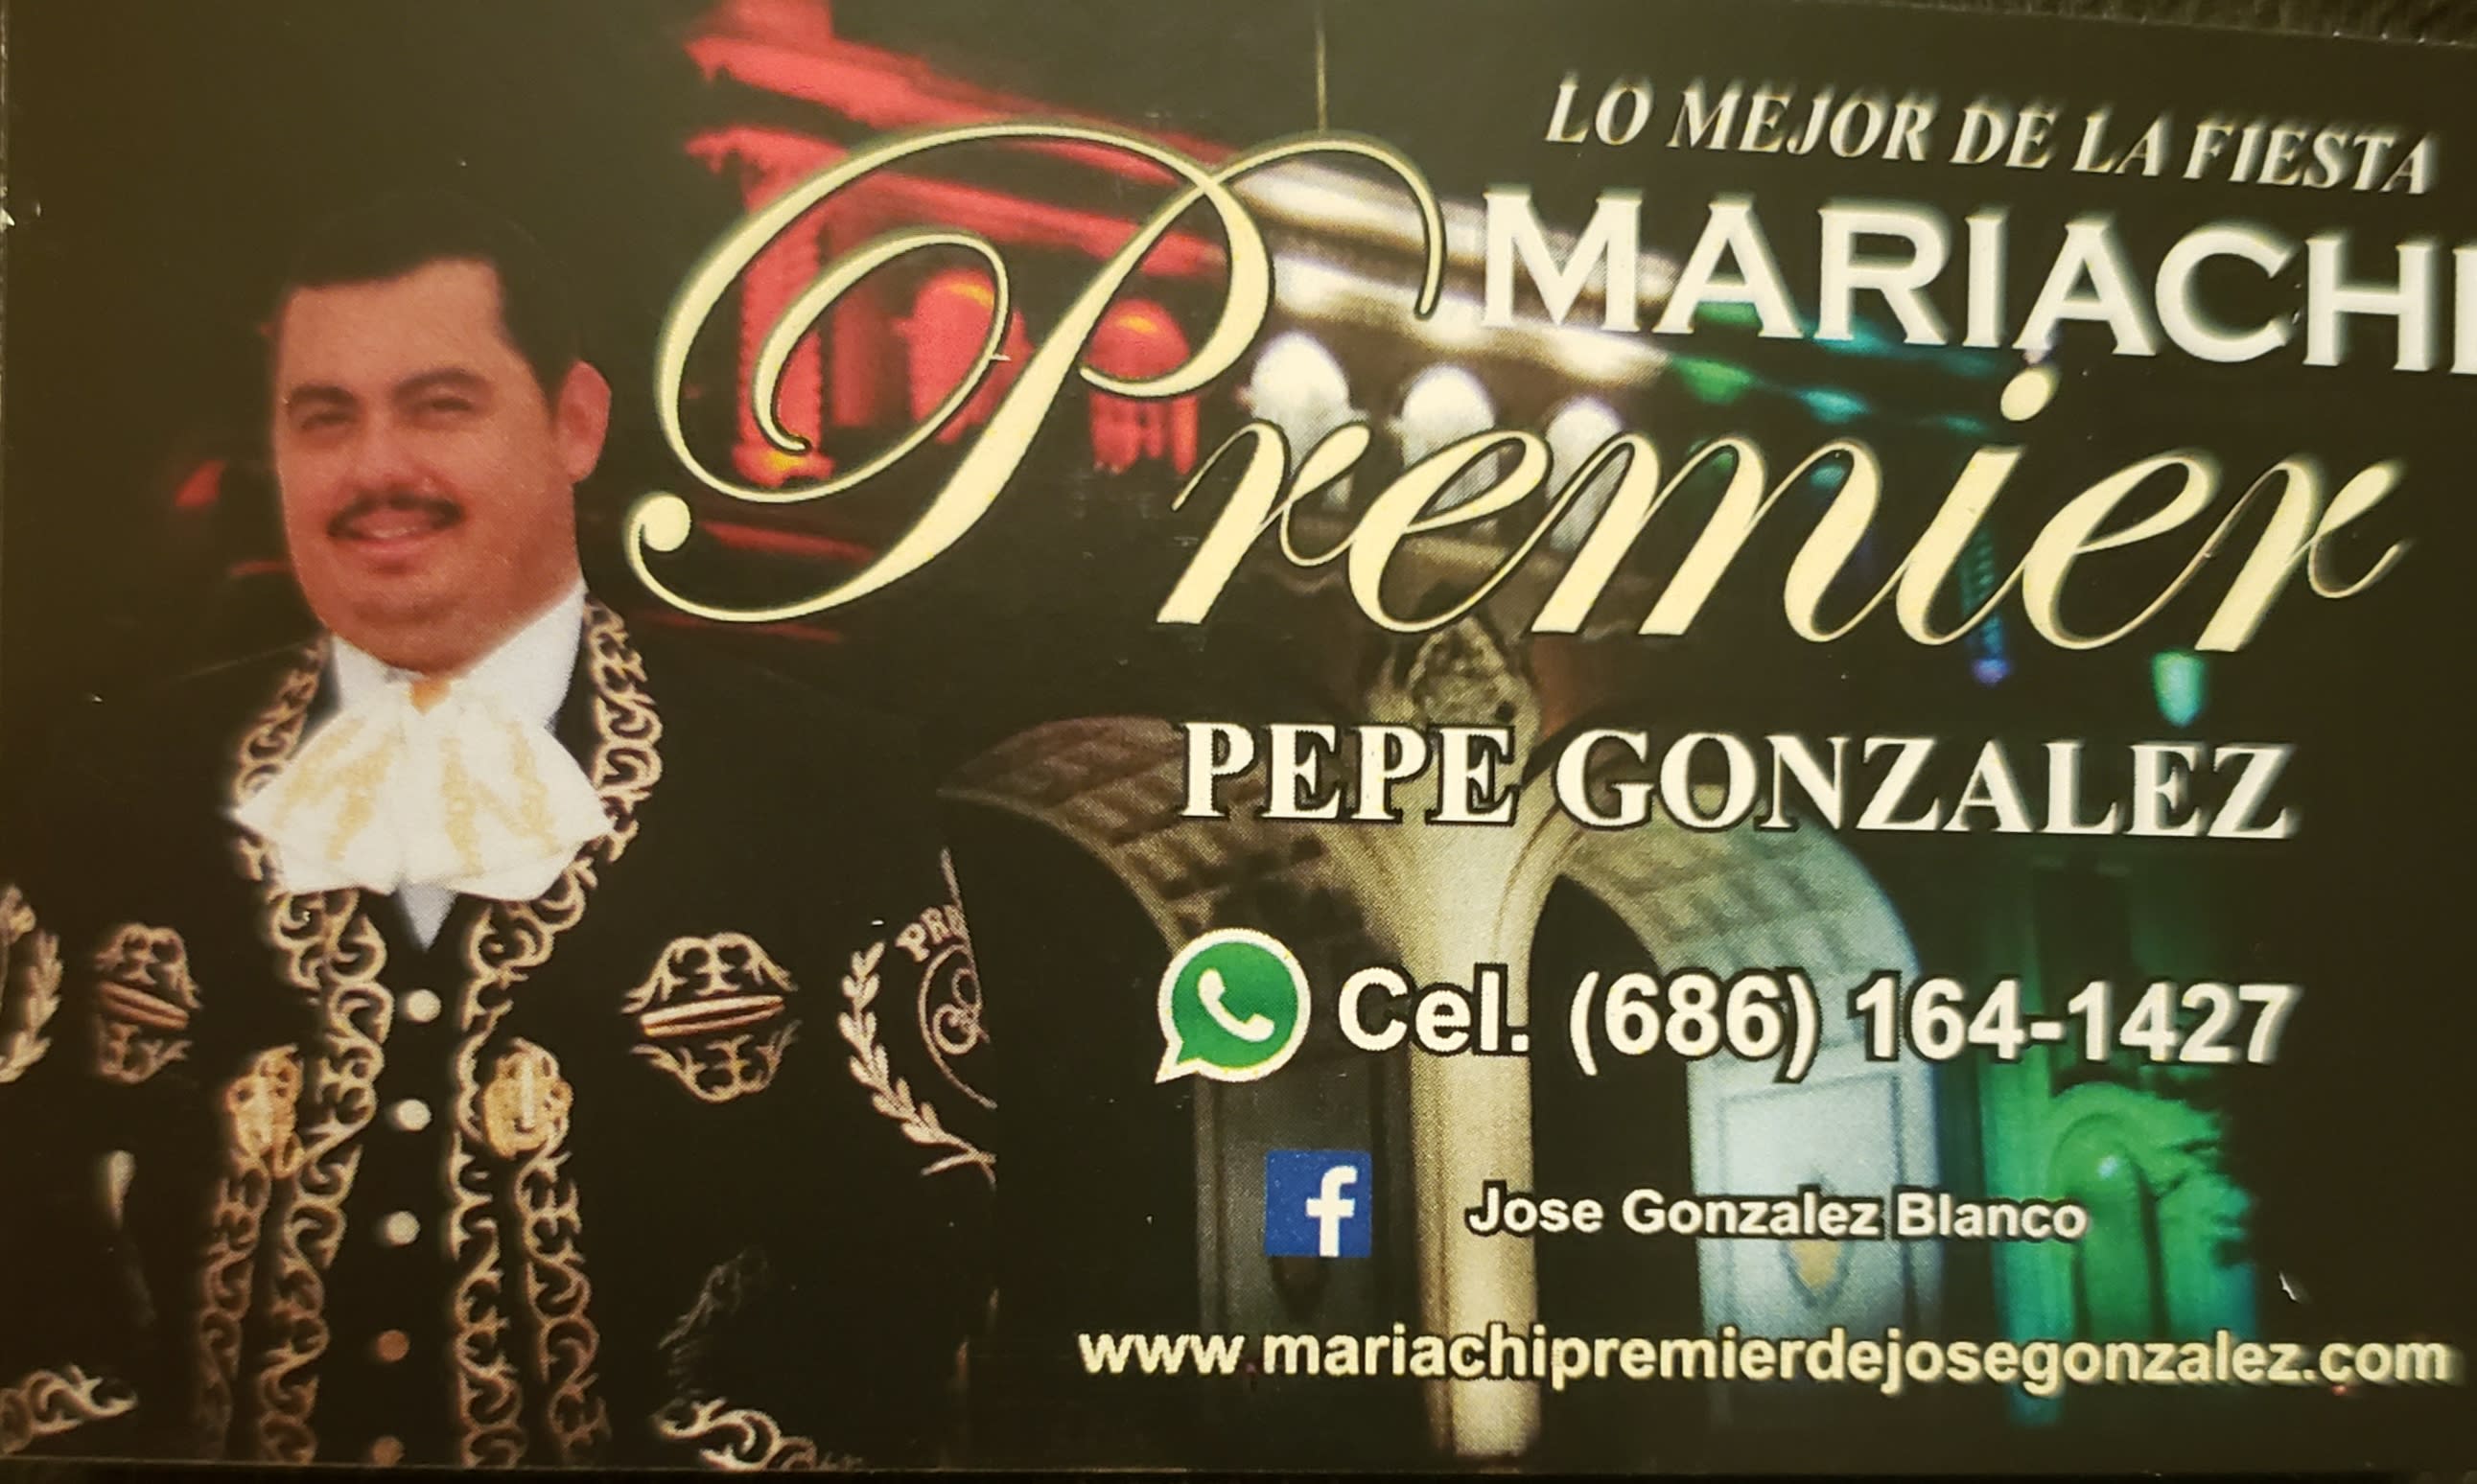 Mariachi Premier de Jose Gonzalez